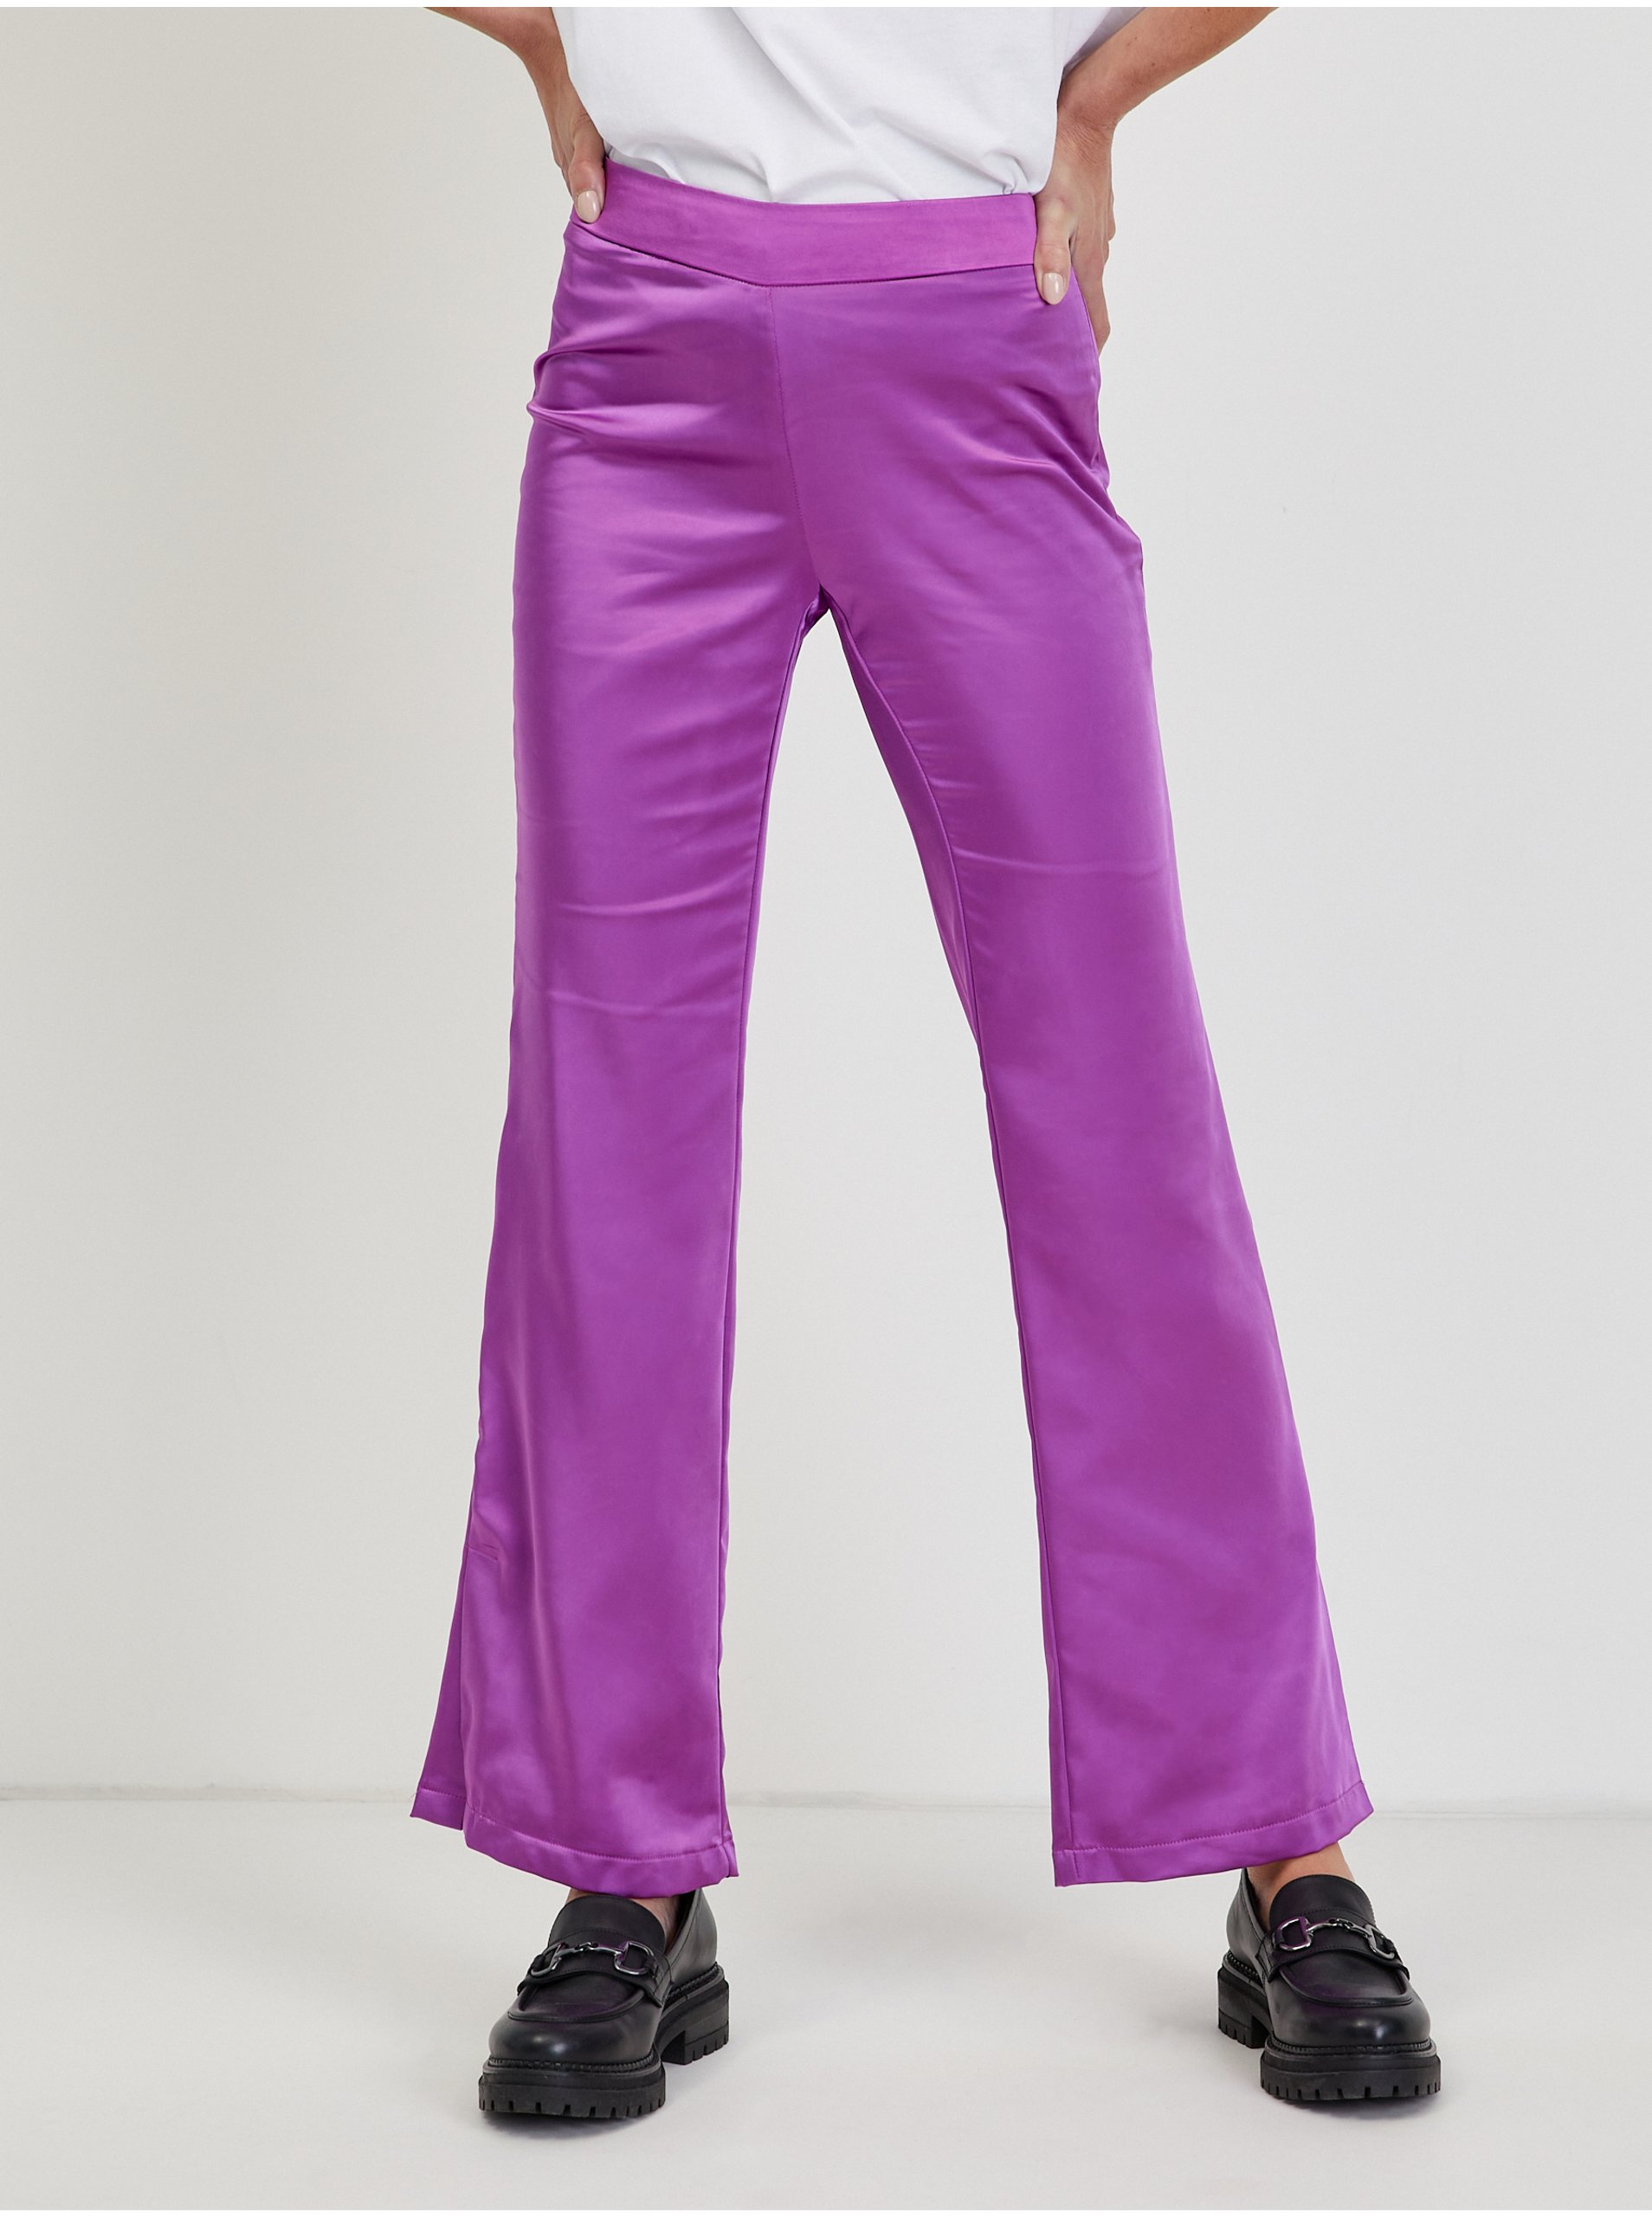 Lacno Nohavice pre ženy ONLY - fialová